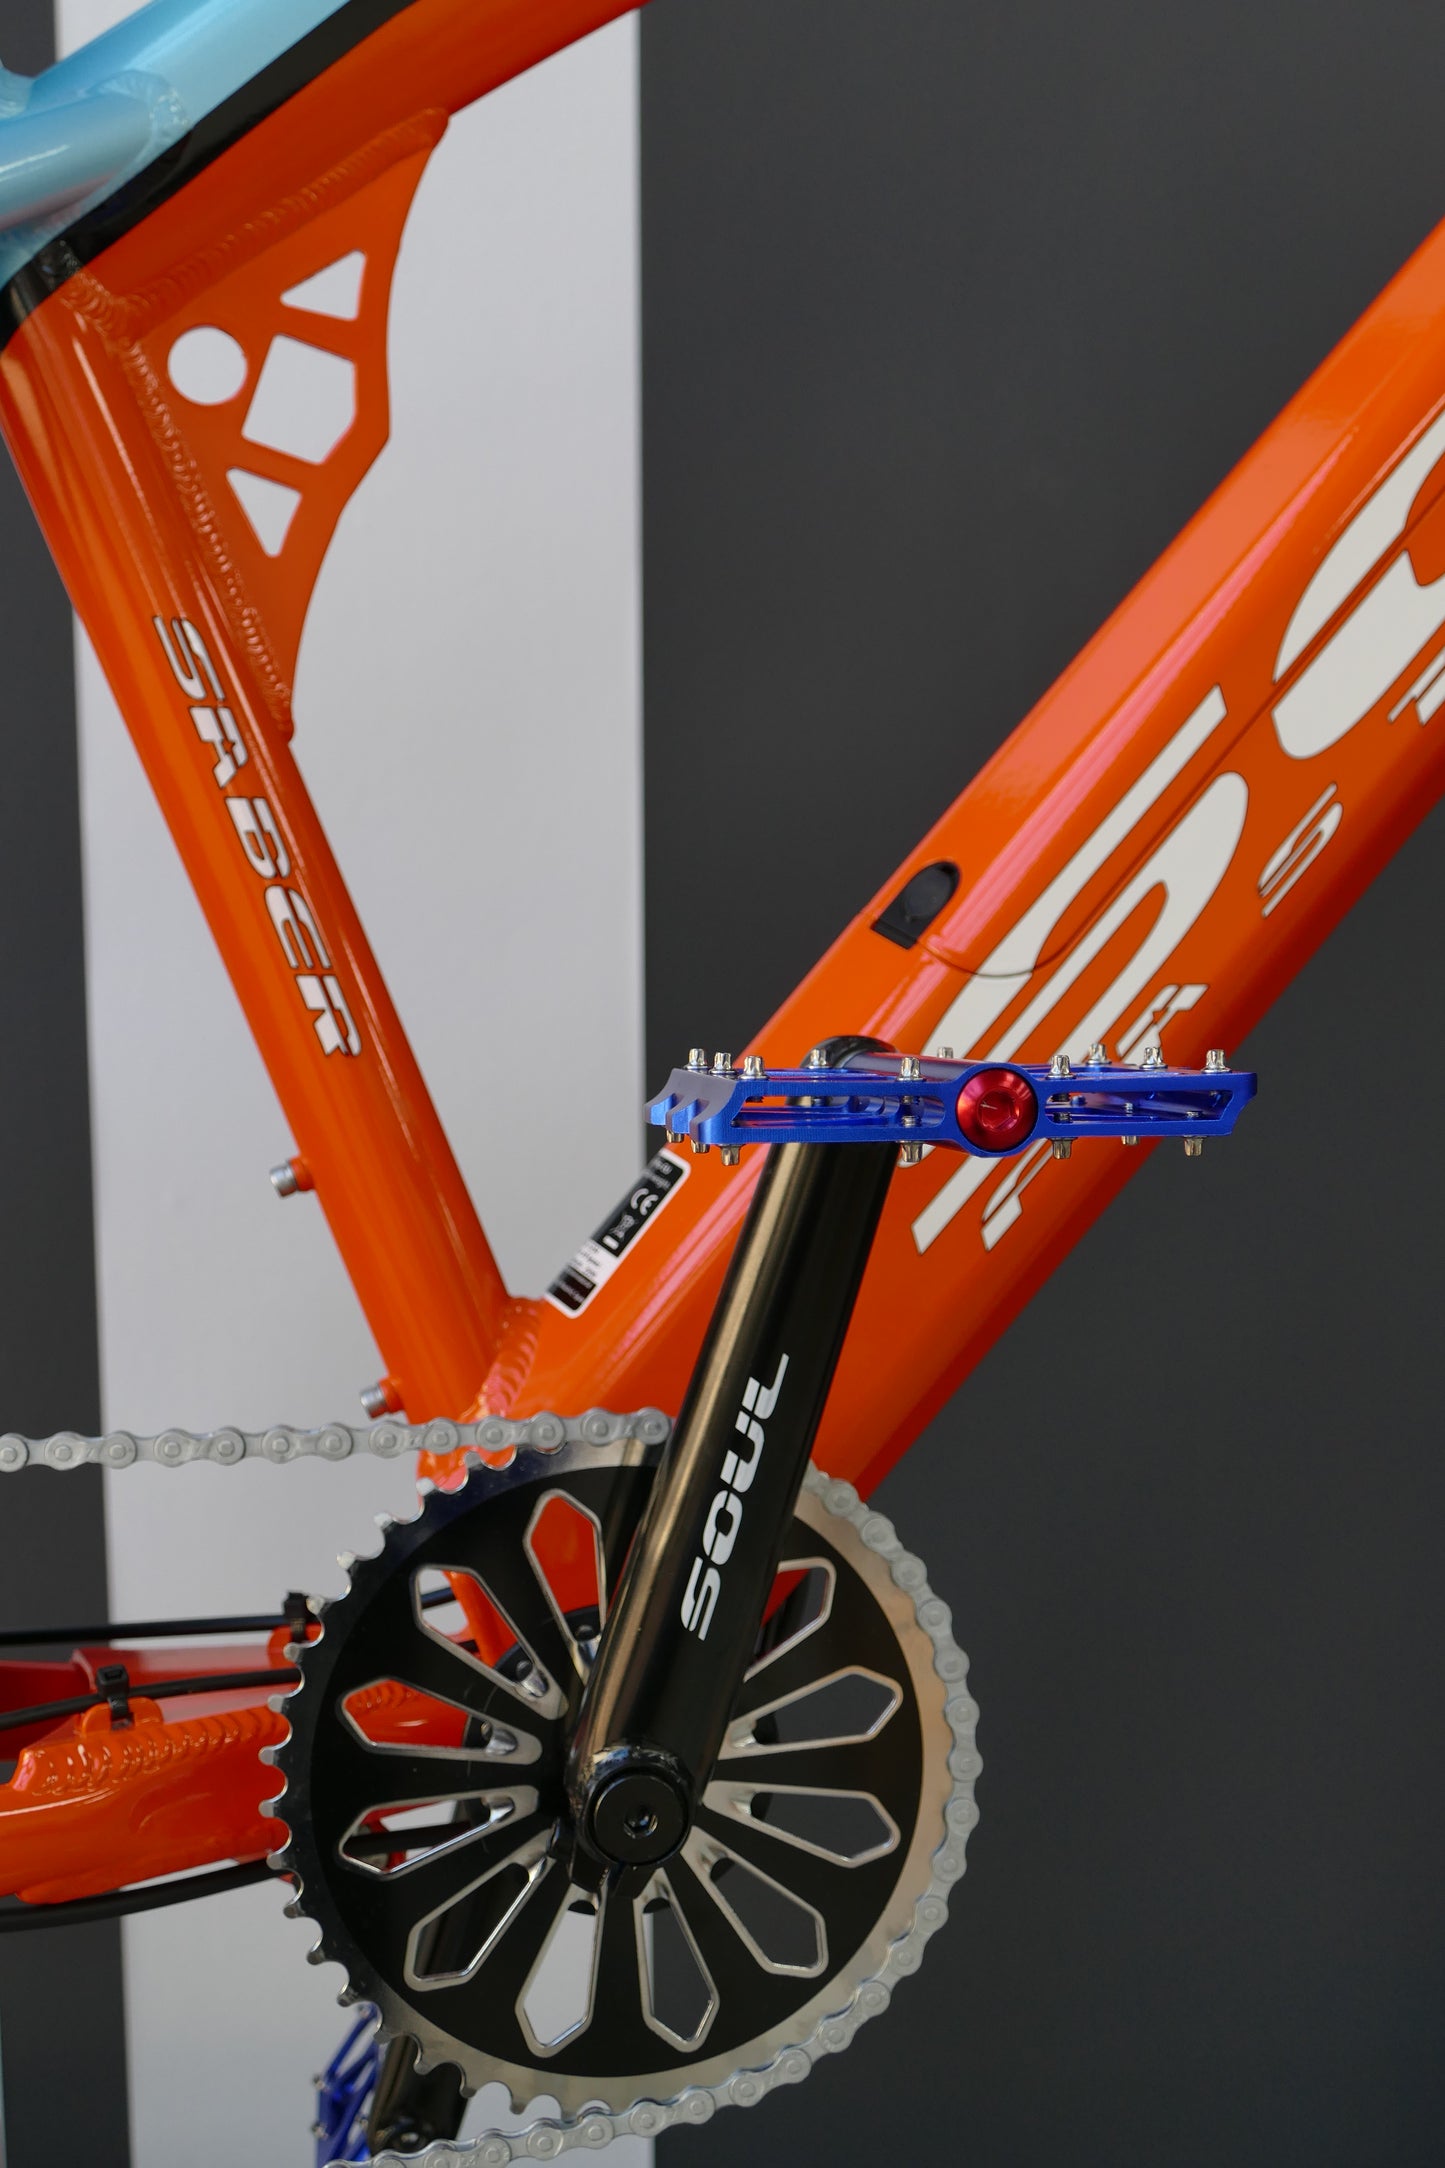 SABER Pro 26'- Man - Racing Orange & Blue